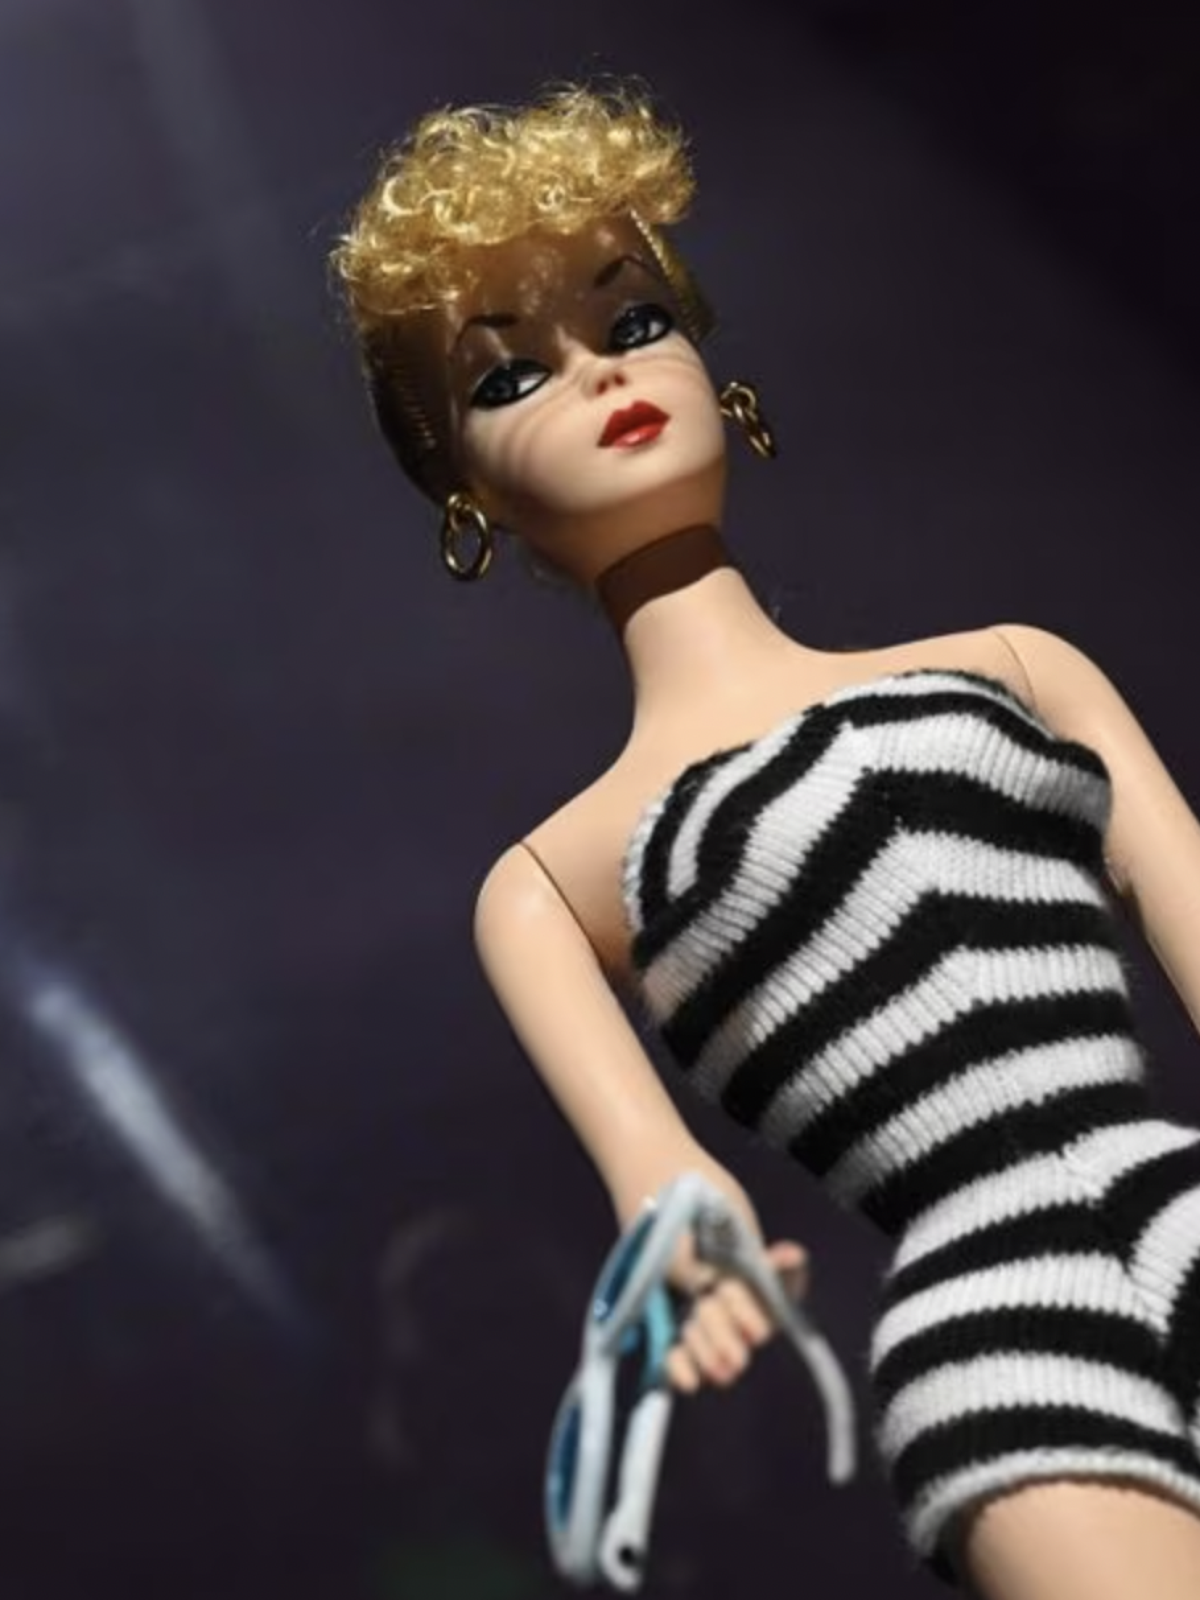 Como Fazer 2 Vestidos sem Costura para Barbie e outras Bonecas